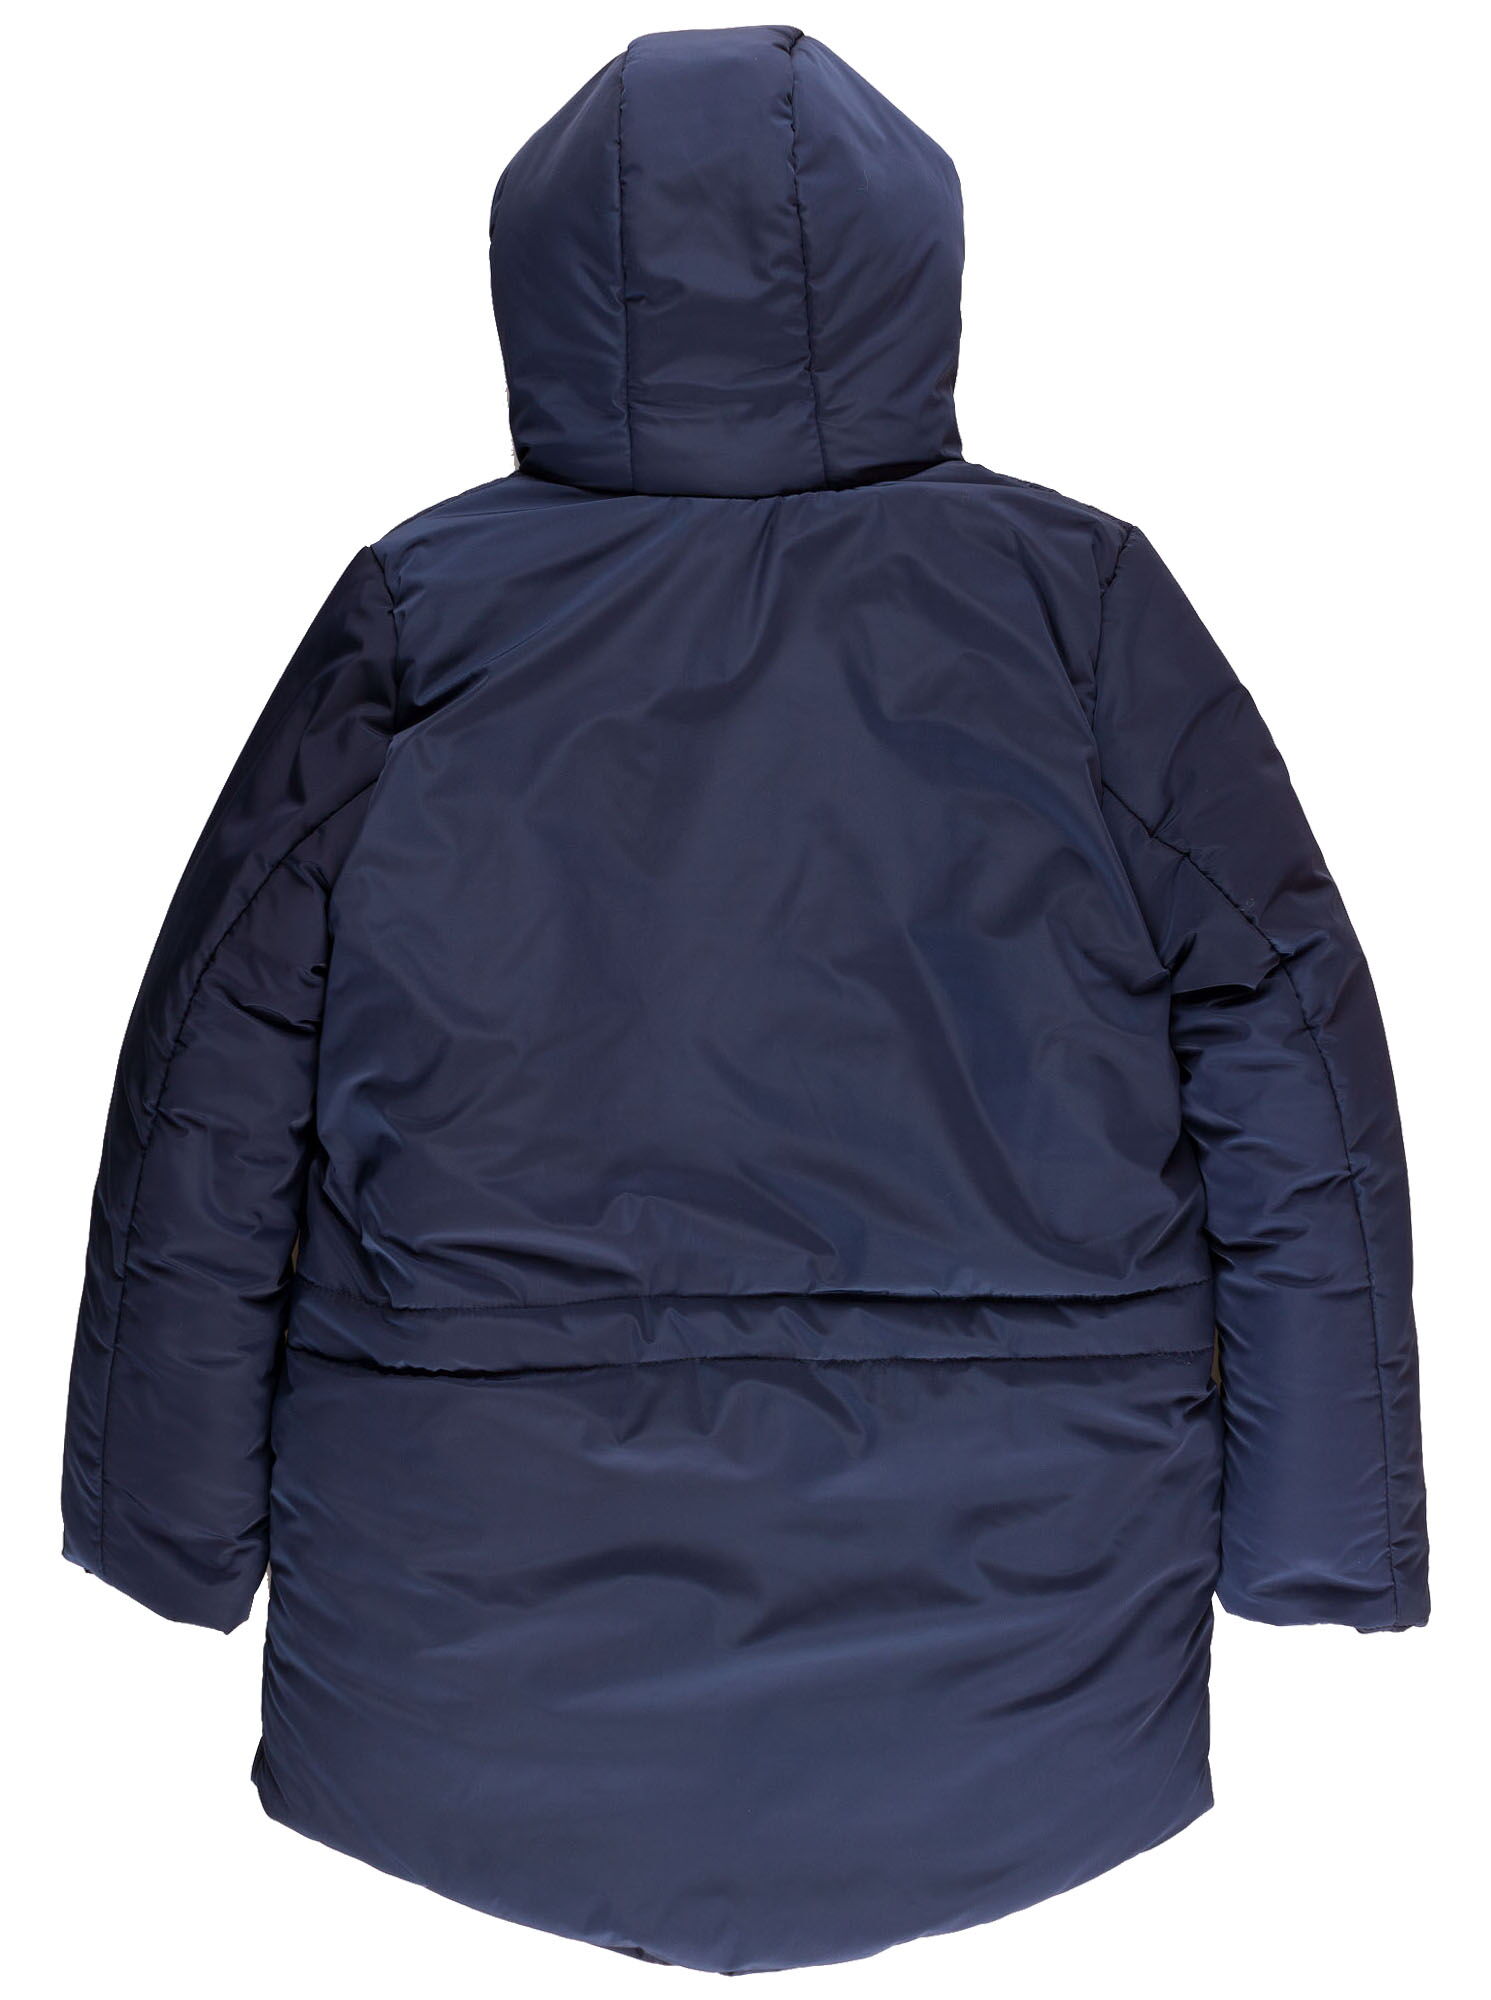 Куртка зимняя для мальчика Одягайко темно-синяя 20091 - размеры